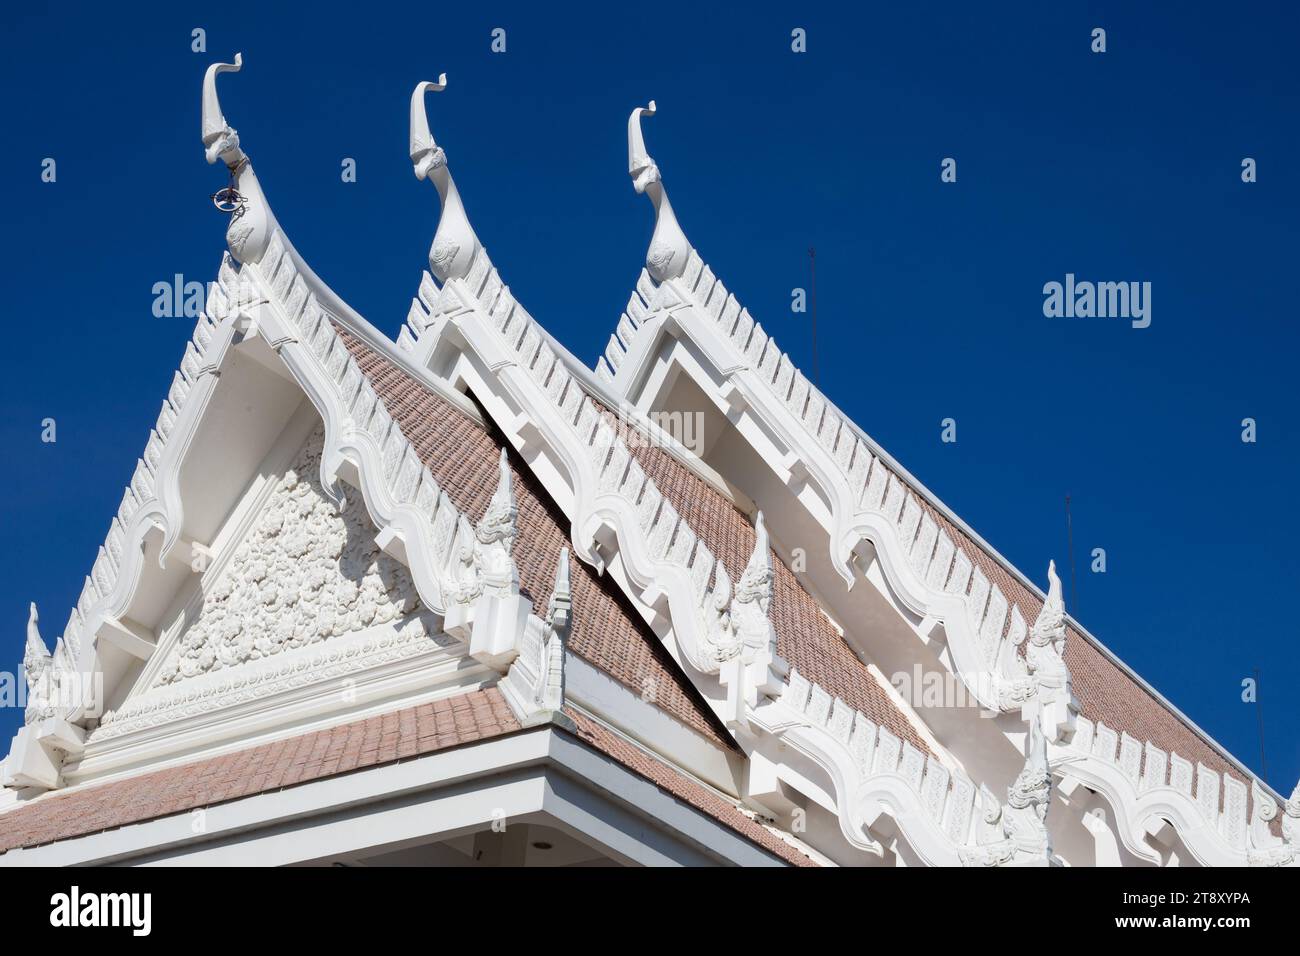 Dach mit Dekoration des buddhistischen weißen Tempels Wat Sawang Arom am Himmel. Stockfoto